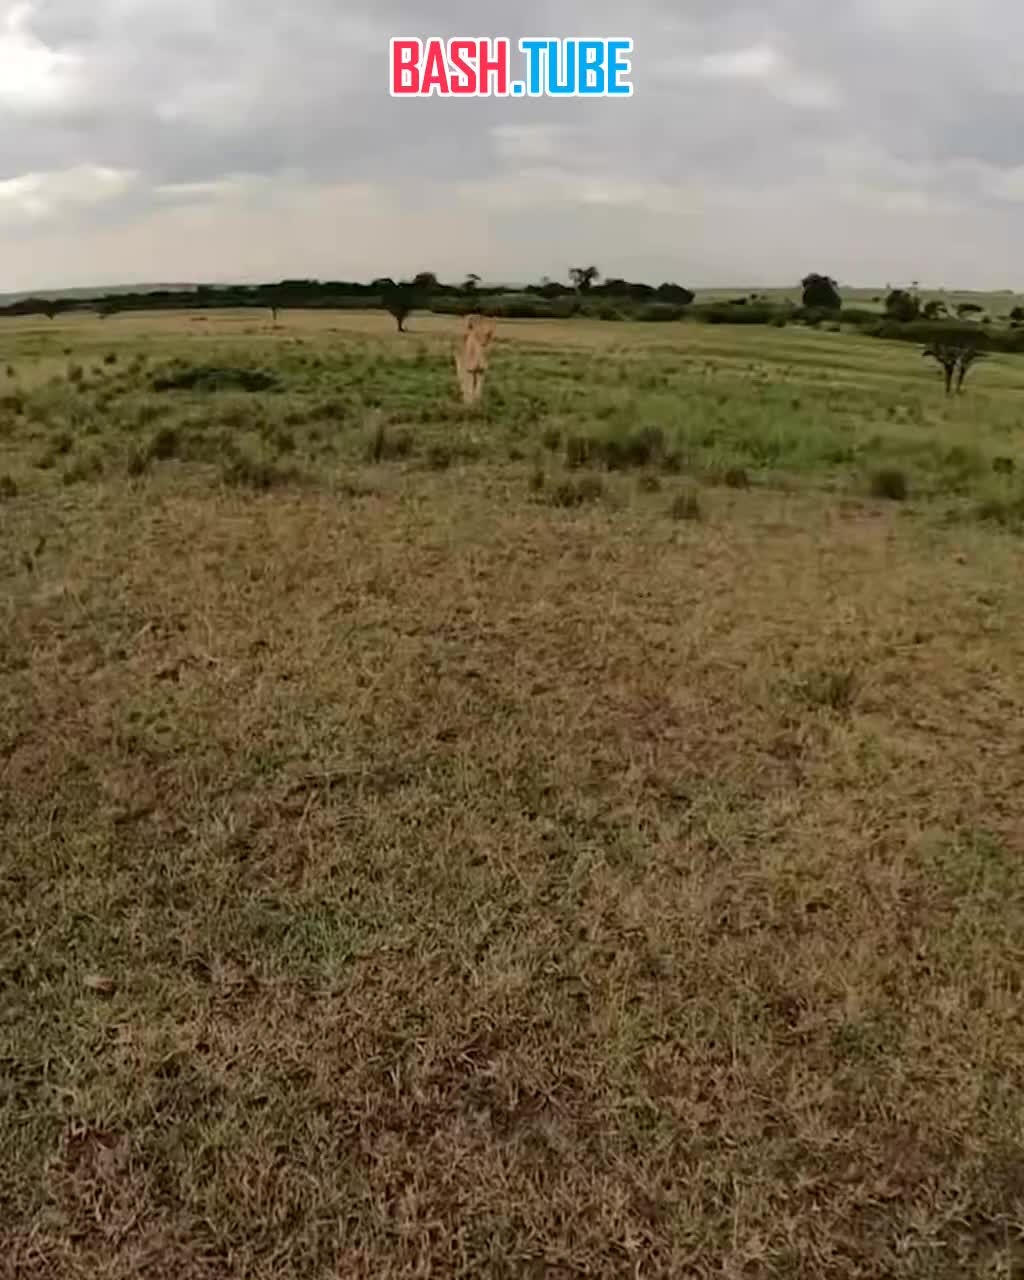 ⁣ Львица в Кении отобрала у блогера камеру с селфи палкой и побежала снимать окрестности